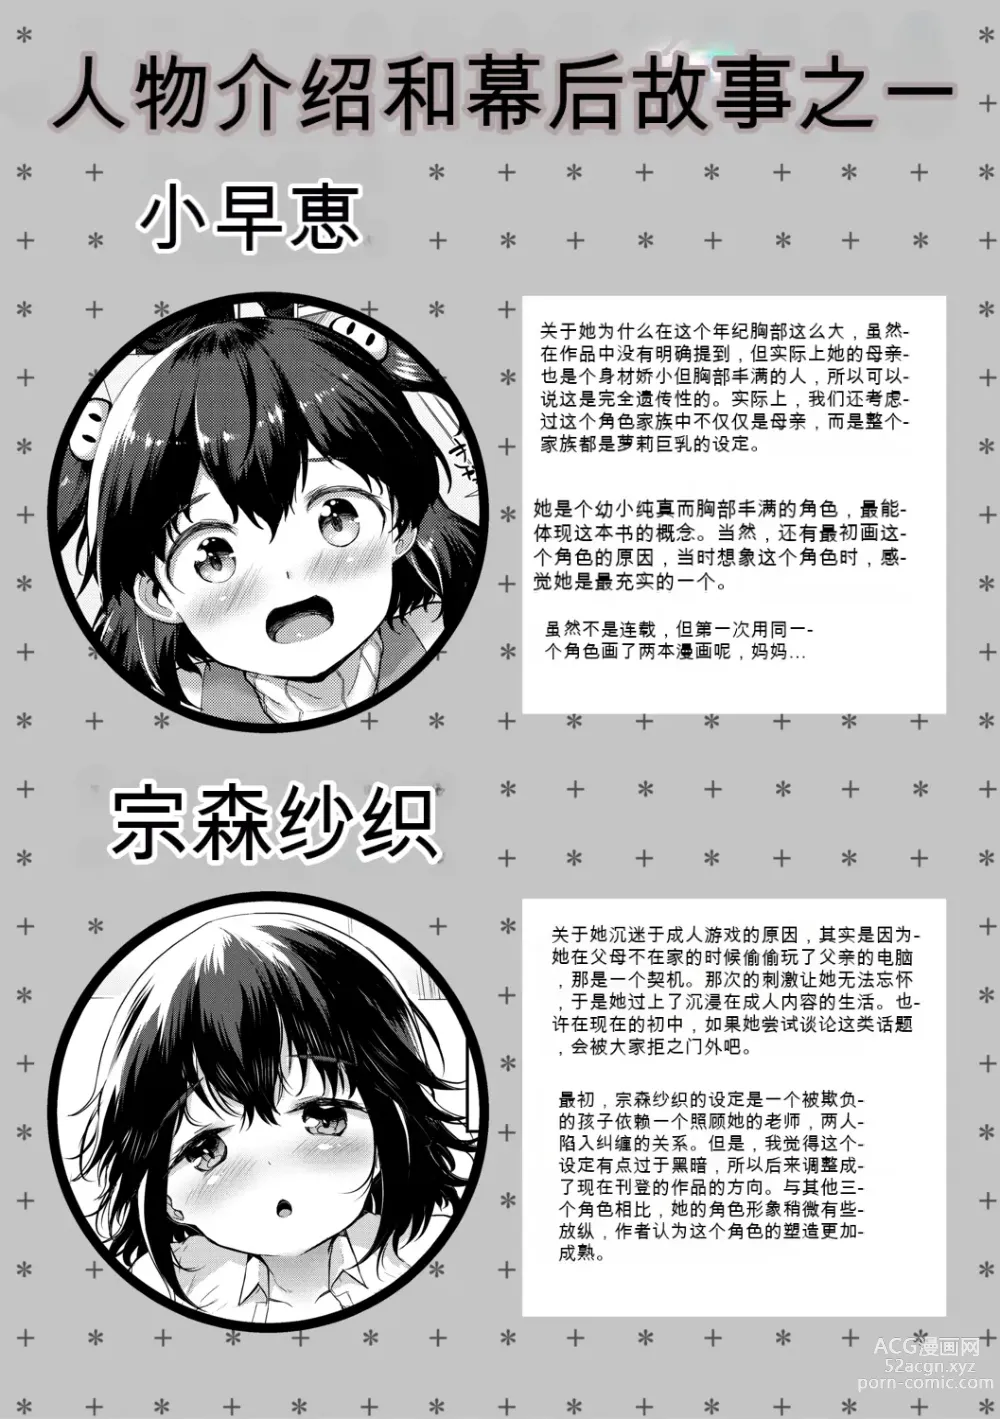 Page 193 of manga Minimum Kyonyuu Shoujo